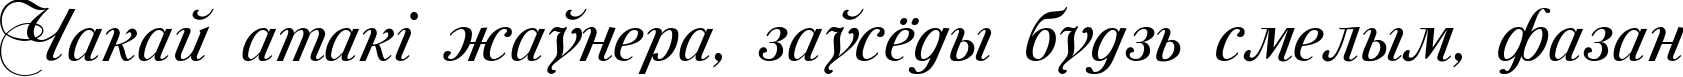 Пример написания шрифтом Mon Amour Two Medium текста на белорусском